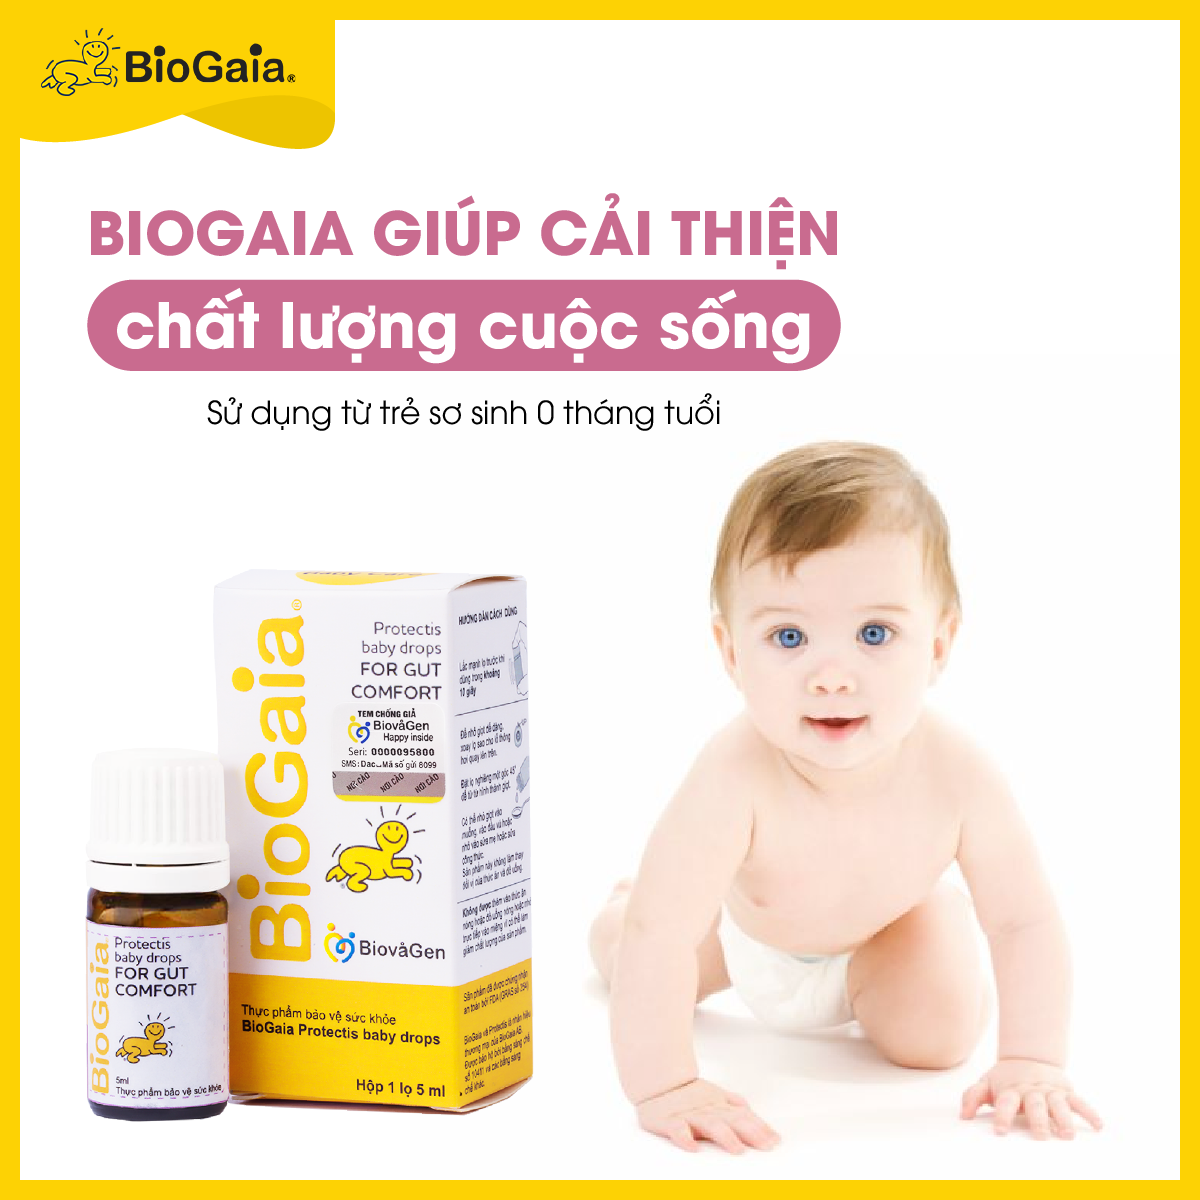 Biogaia giúp phòng bệnh tốt, cải thiện chất lượng cuộc sống